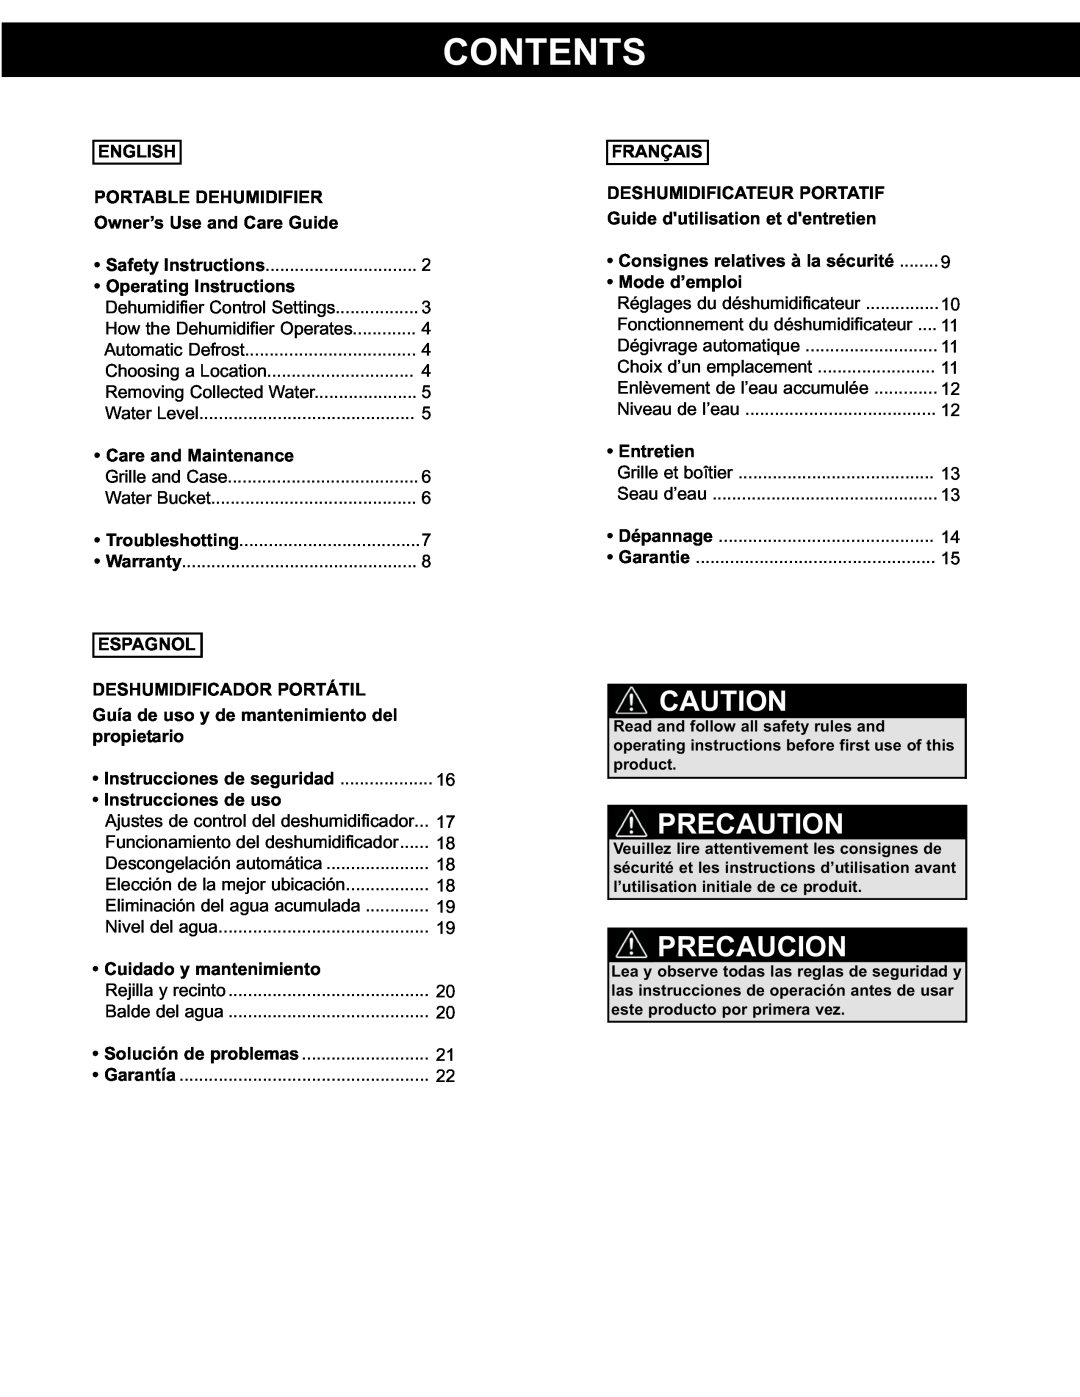 Danby DDR3011 manual Contents, Precaution, Precaucion, English, Portable Dehumidifier, Owner’s Use and Care Guide, Espagnol 